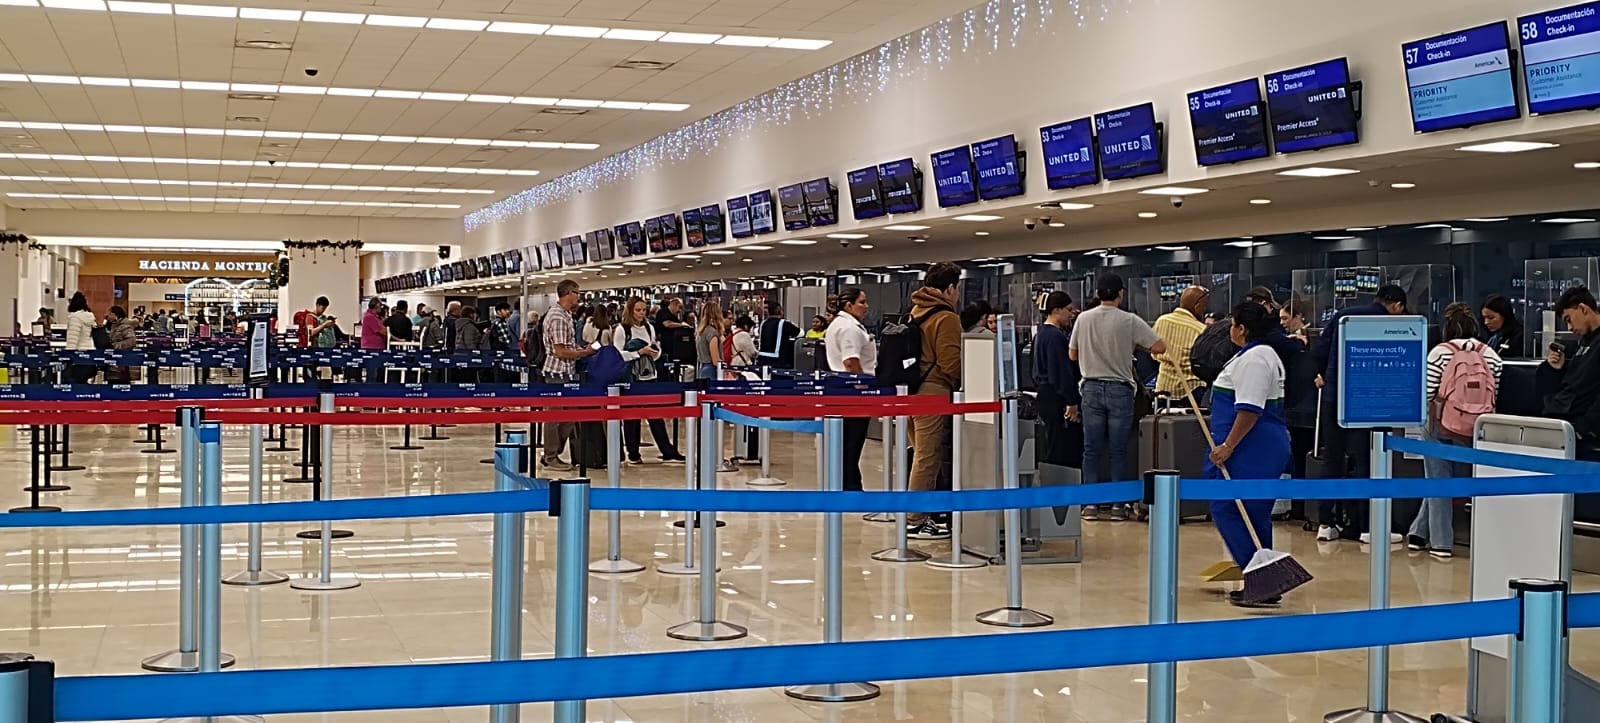 Neblina en el aeropuerto de Mérida causa retrasos en vuelos por casi media hora